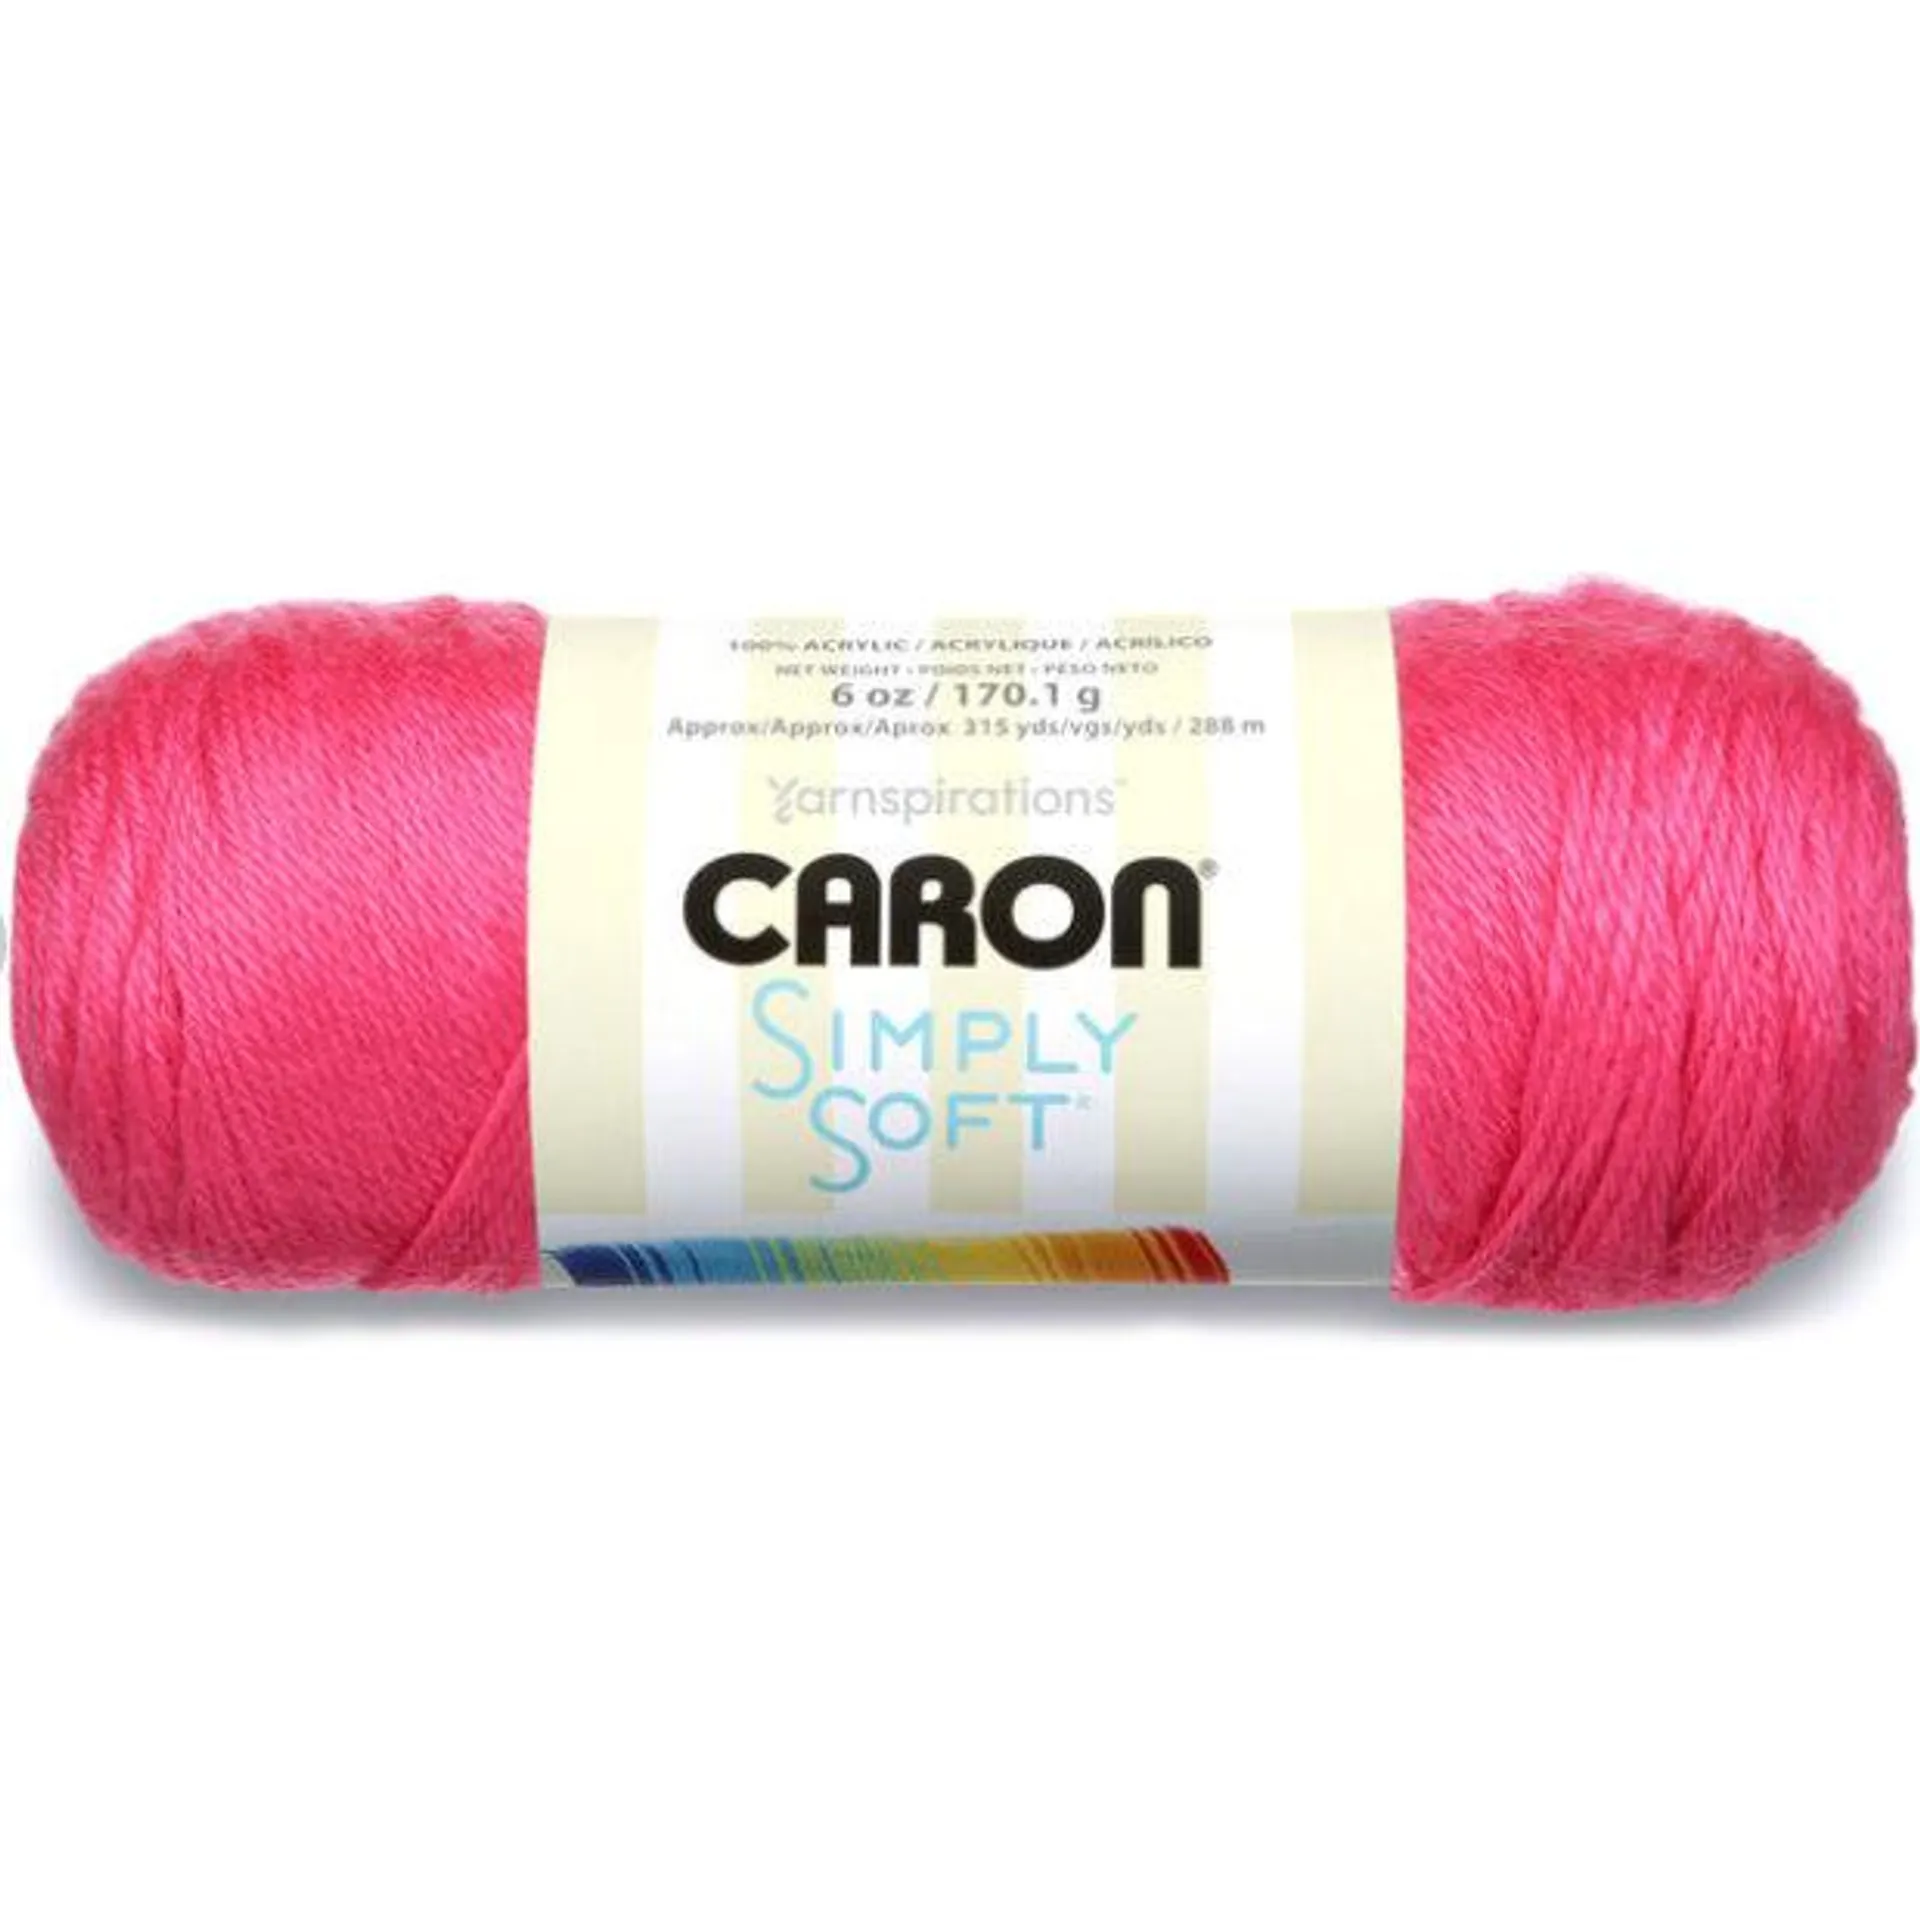 Simply Soft Brites - 170g - Caron